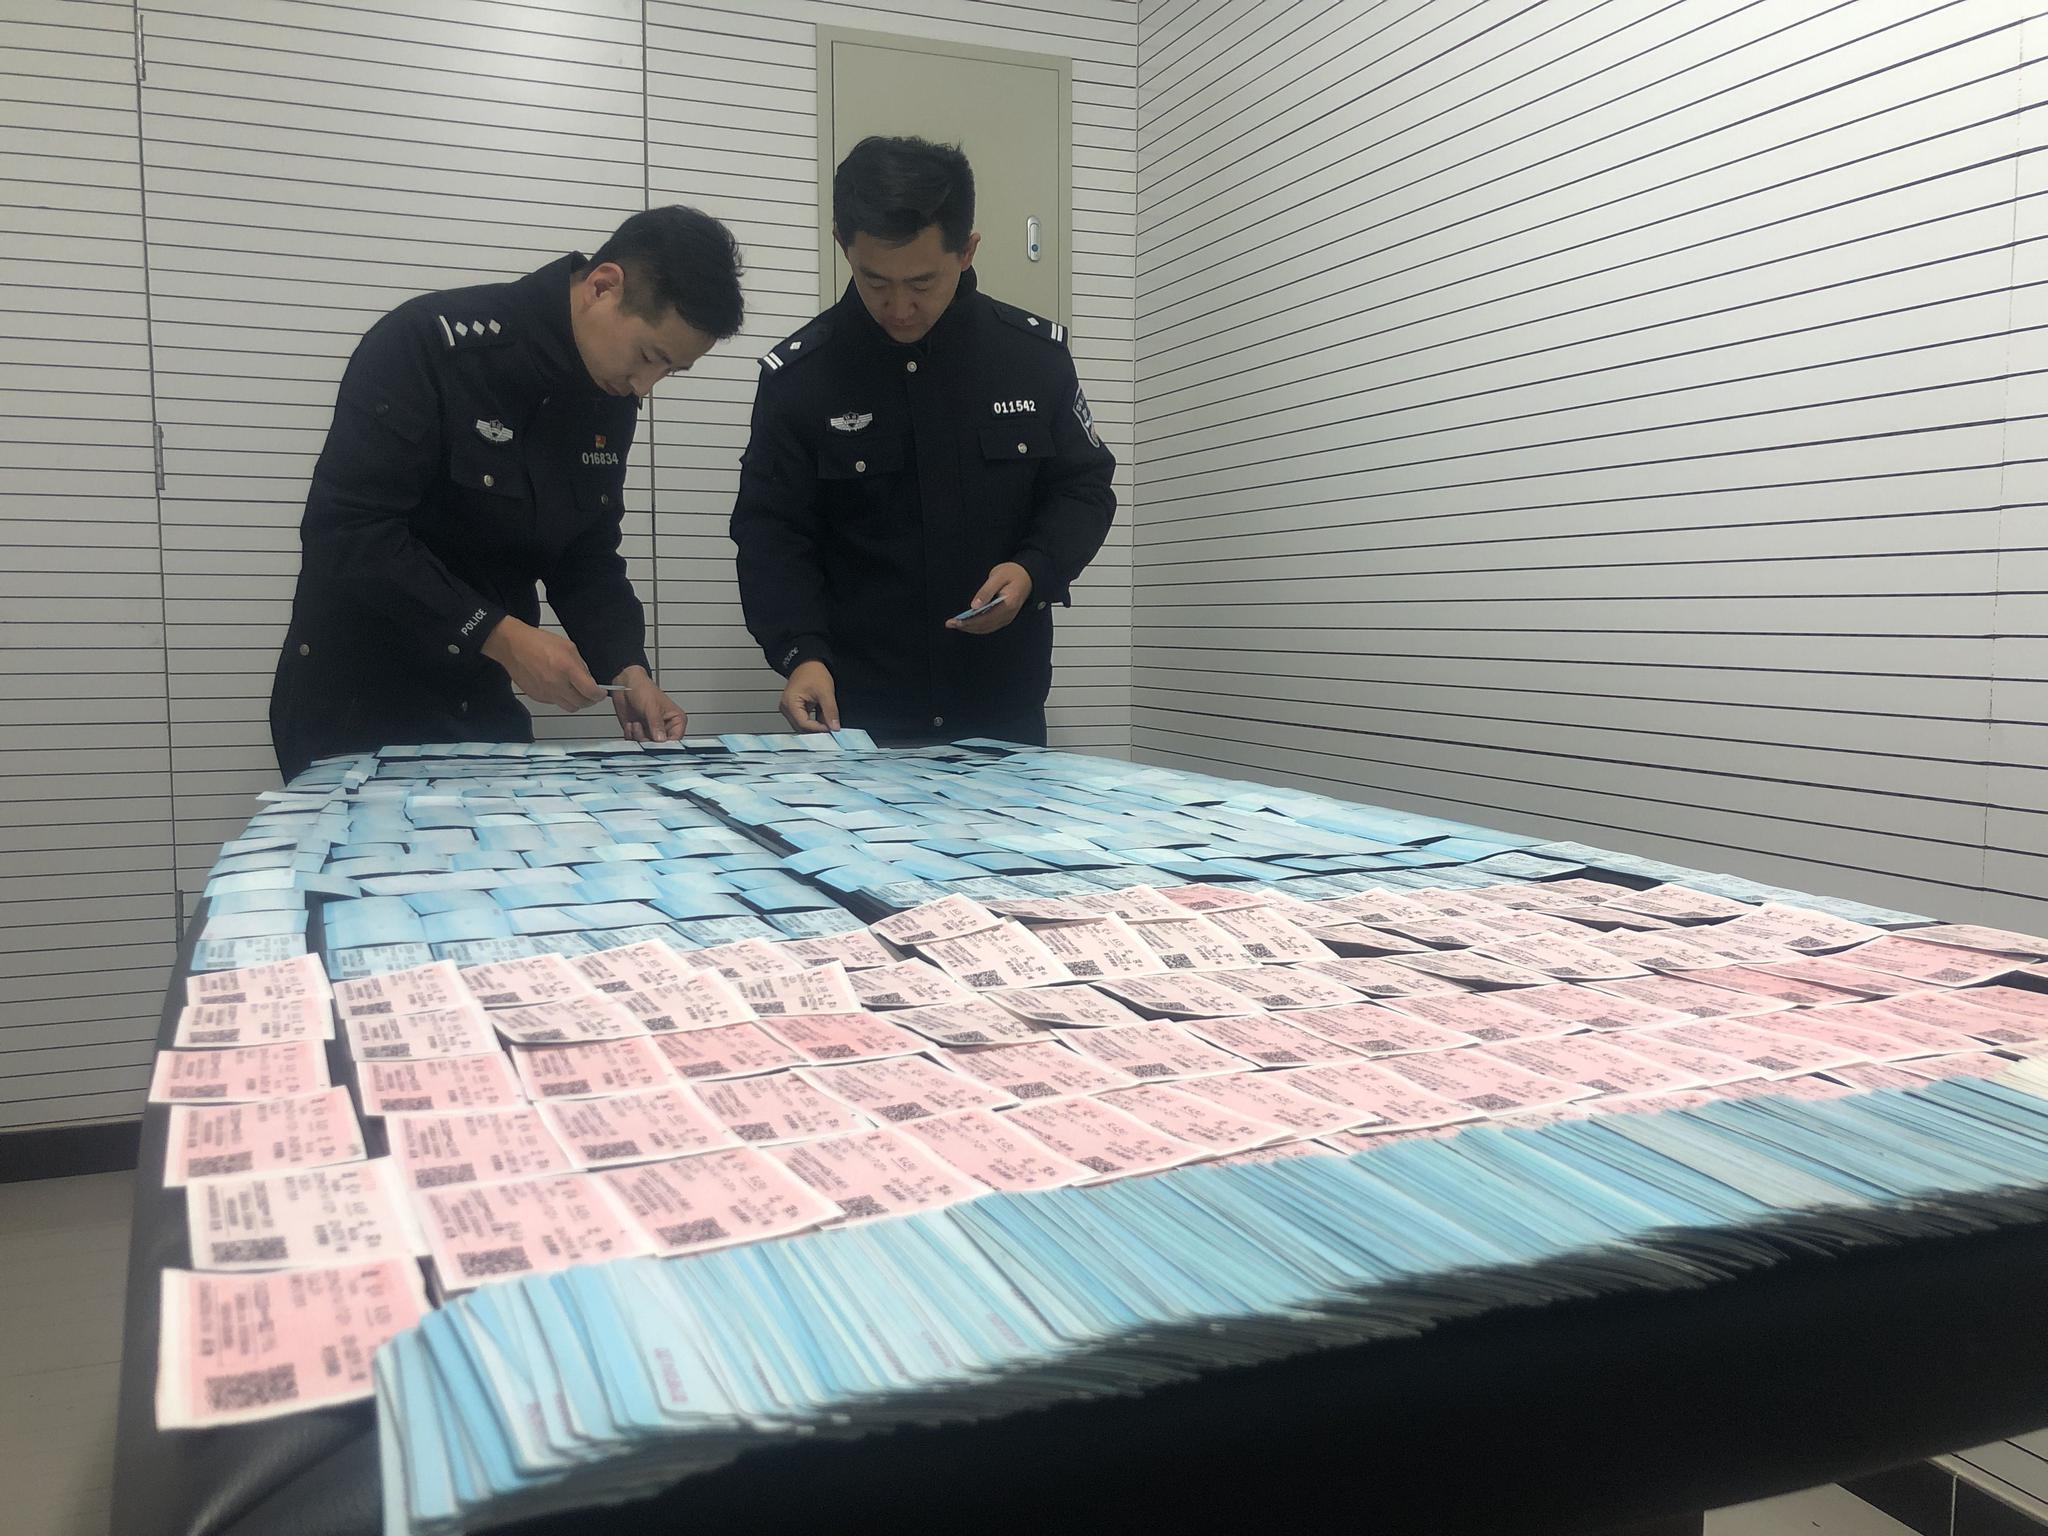  北京铁警查获的假票。警方供图